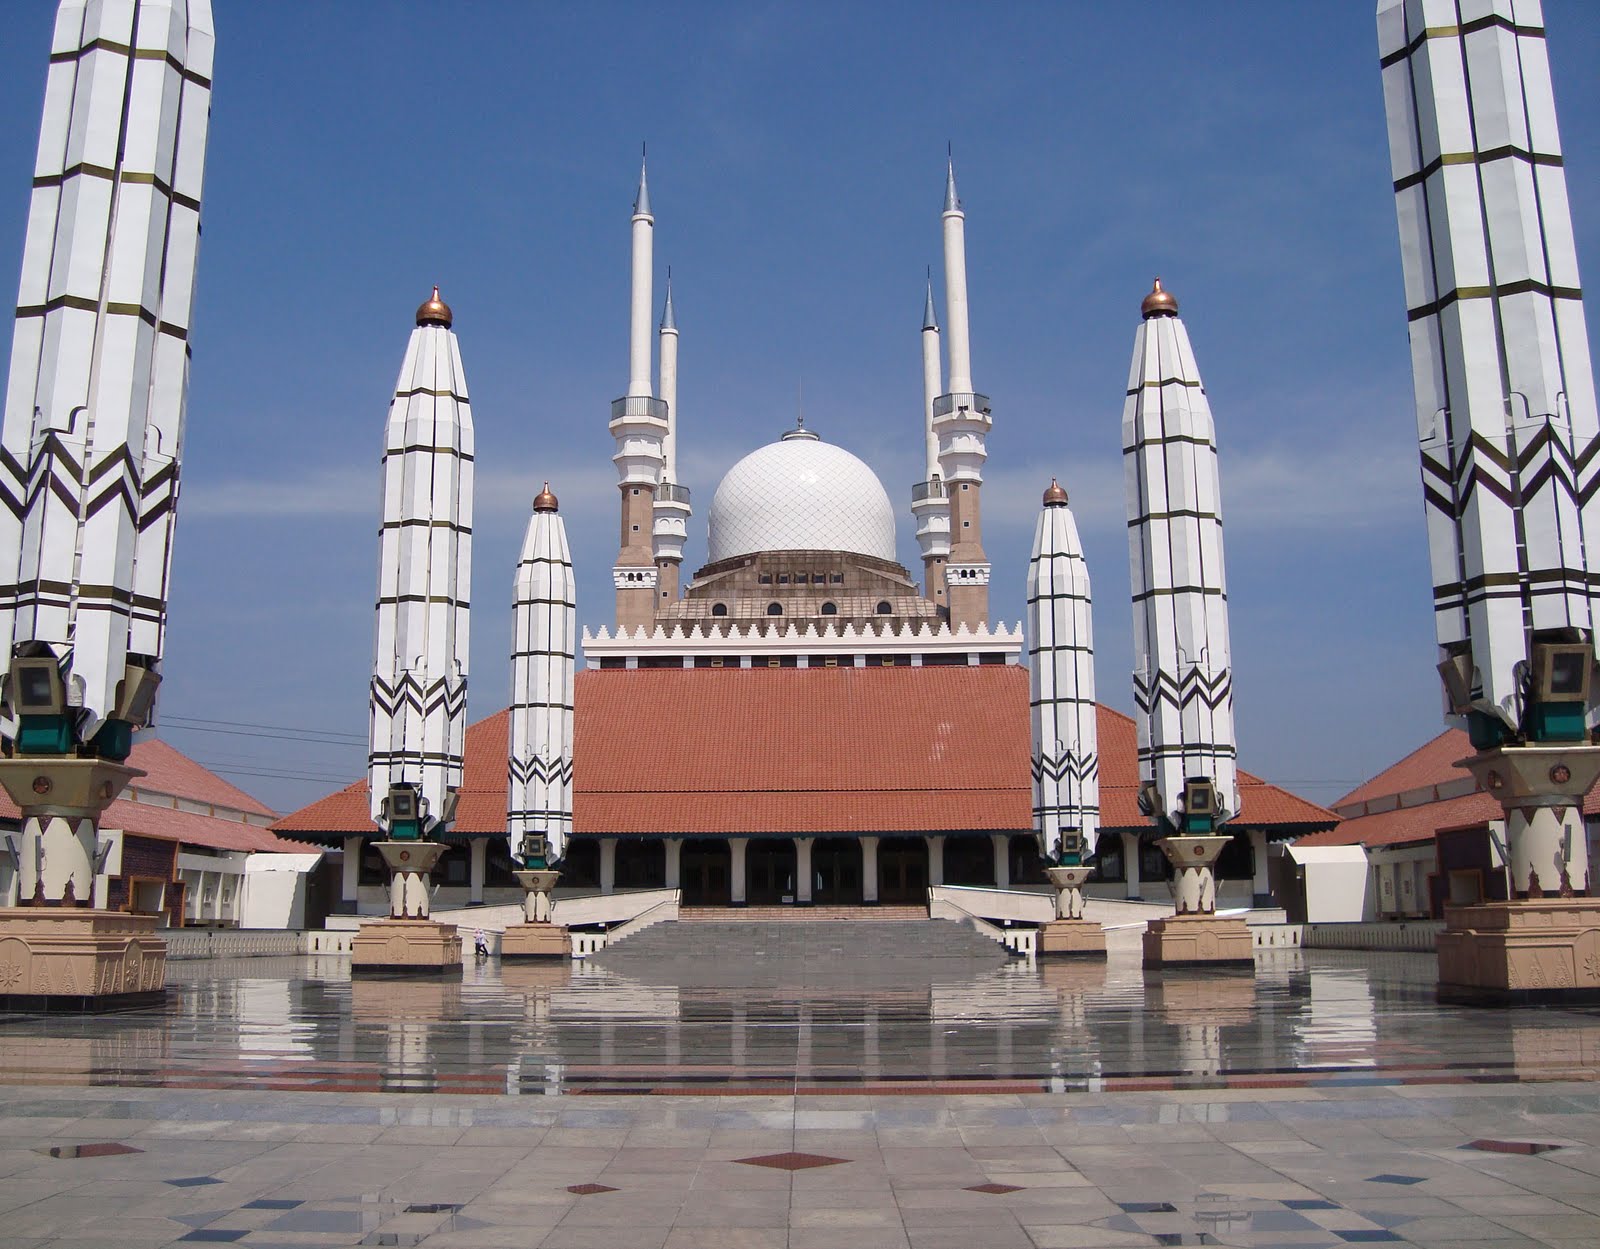 Bimbingan dan Penyuluhan Islam: Masjid Agung Jawa Tengah